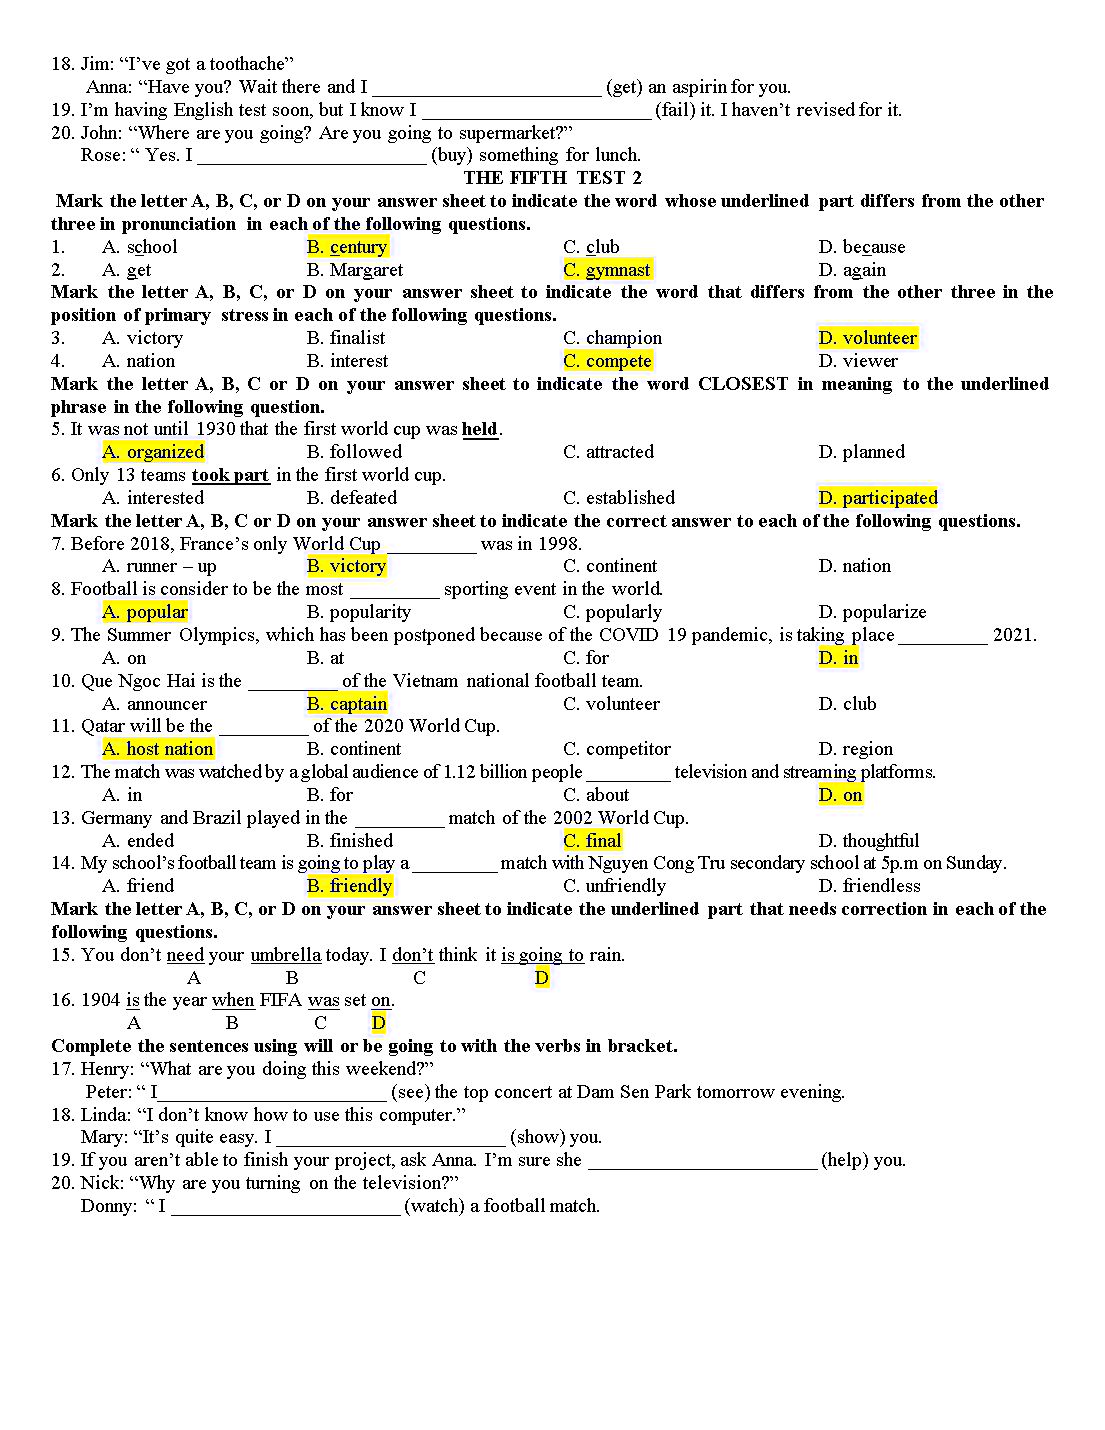 Tổng hợp đề kiểm tra 15 phút tiếng Anh lớp 10 trang 9